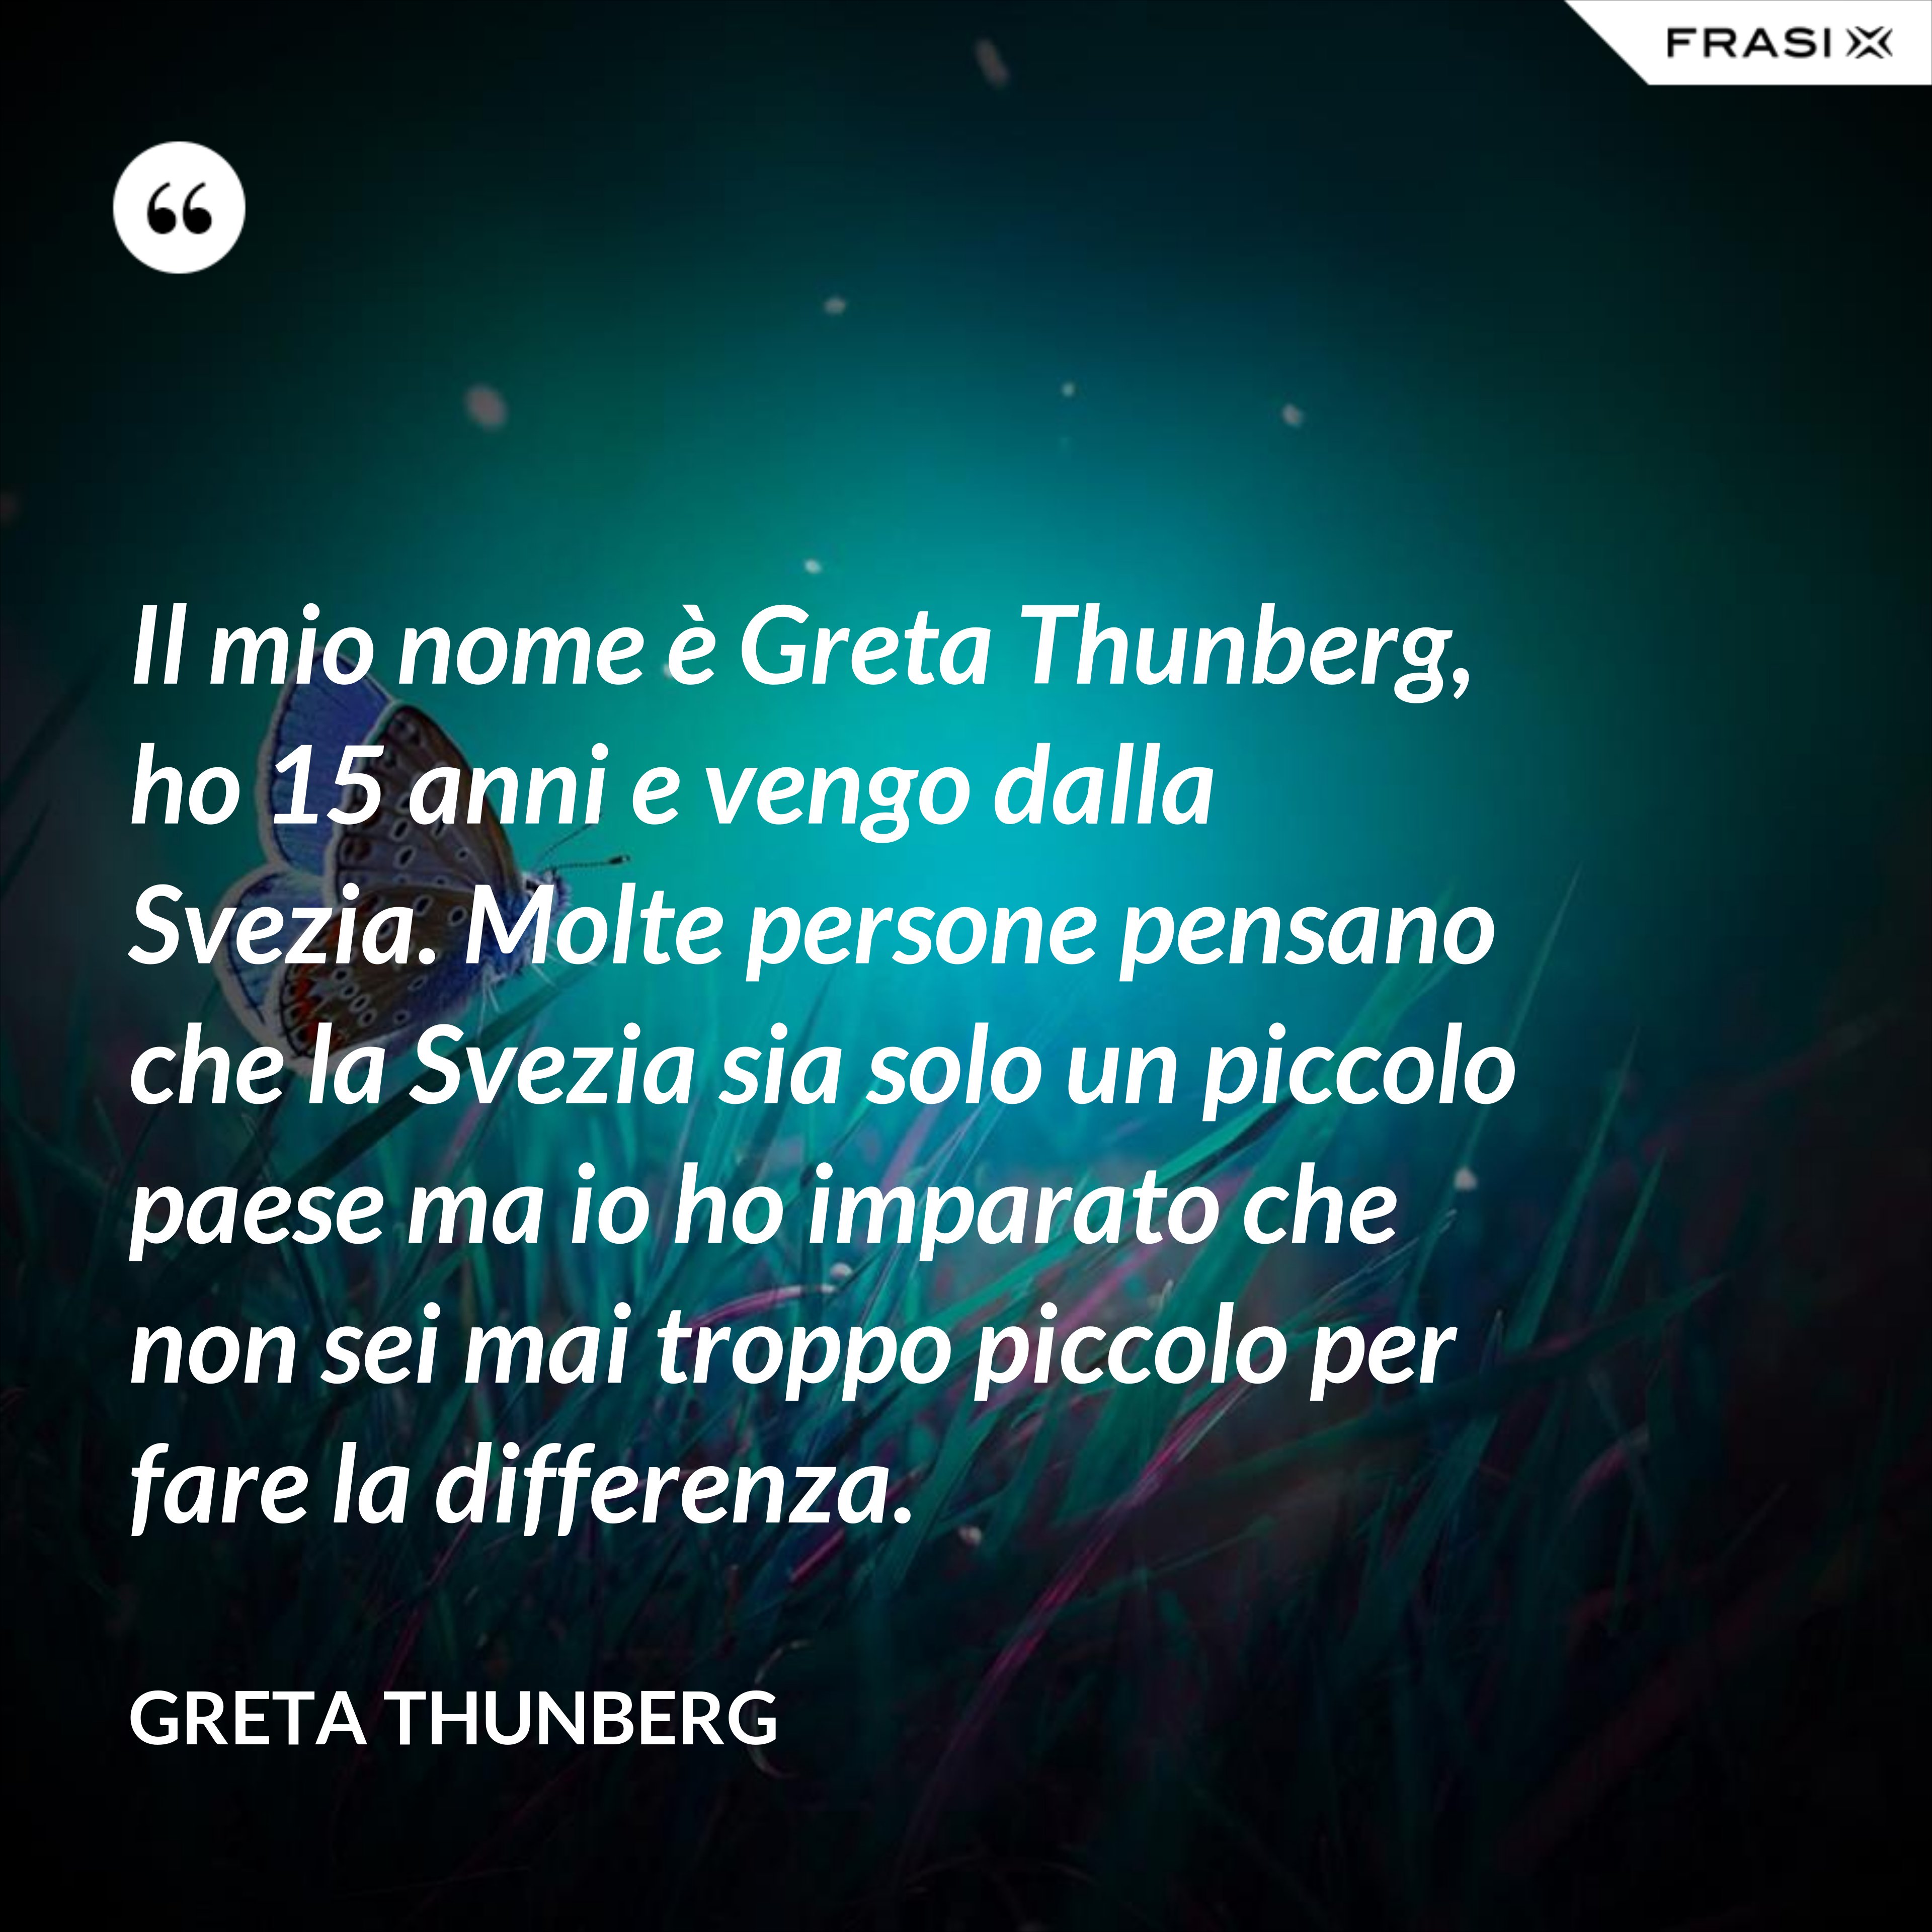 Il mio nome è Greta Thunberg, ho 15 anni e vengo dalla Svezia. Molte persone pensano che la Svezia sia solo un piccolo paese ma io ho imparato che non sei mai troppo piccolo per fare la differenza. - Greta Thunberg